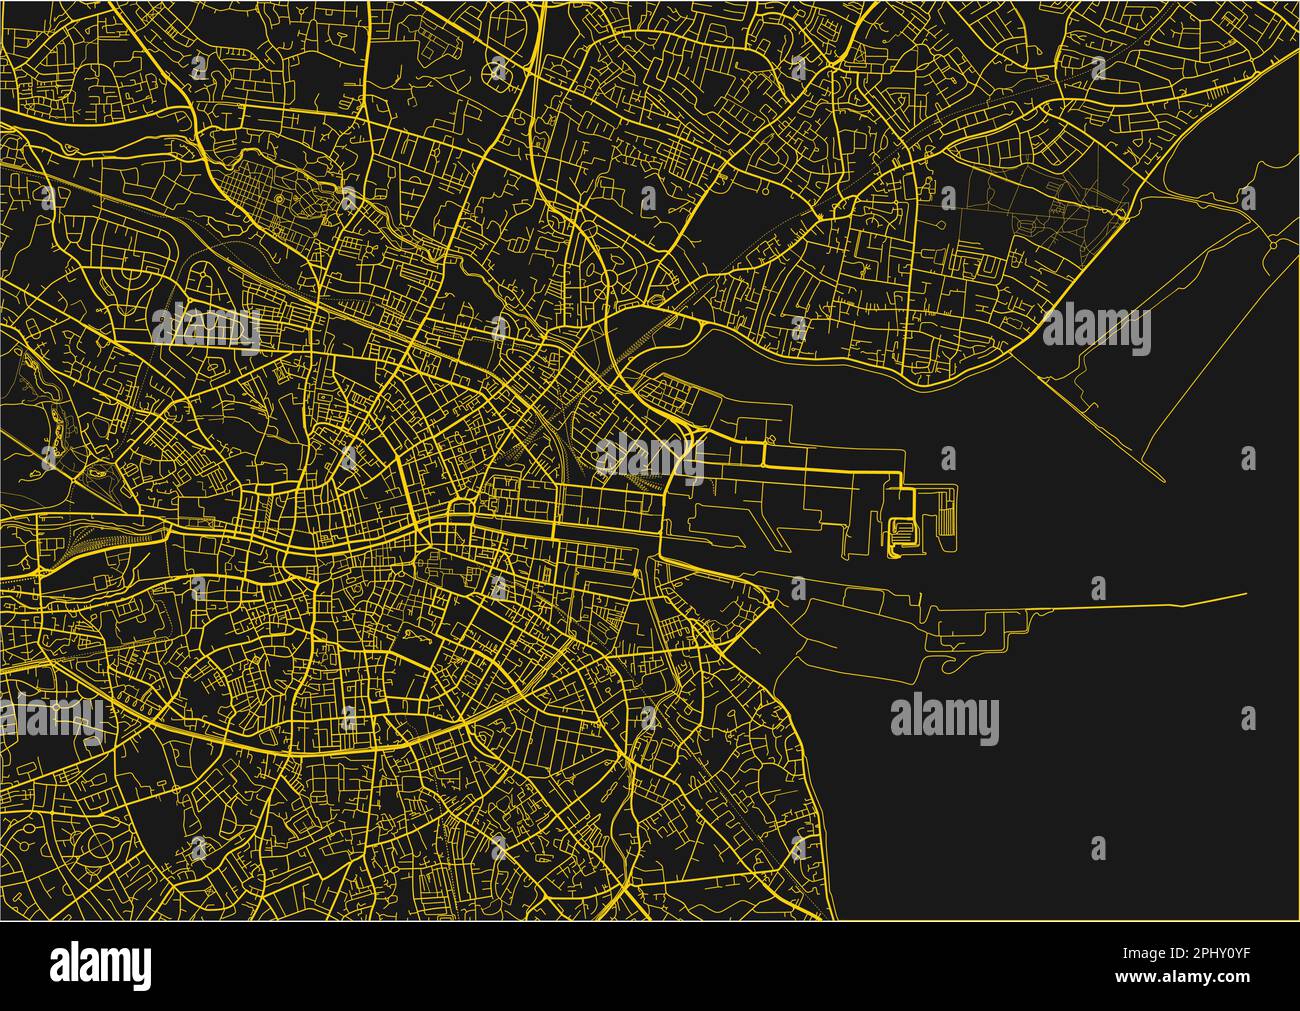 Schwarz-gelber Stadtplan von Dublin mit gut organisierten getrennten Schichten. Stock Vektor